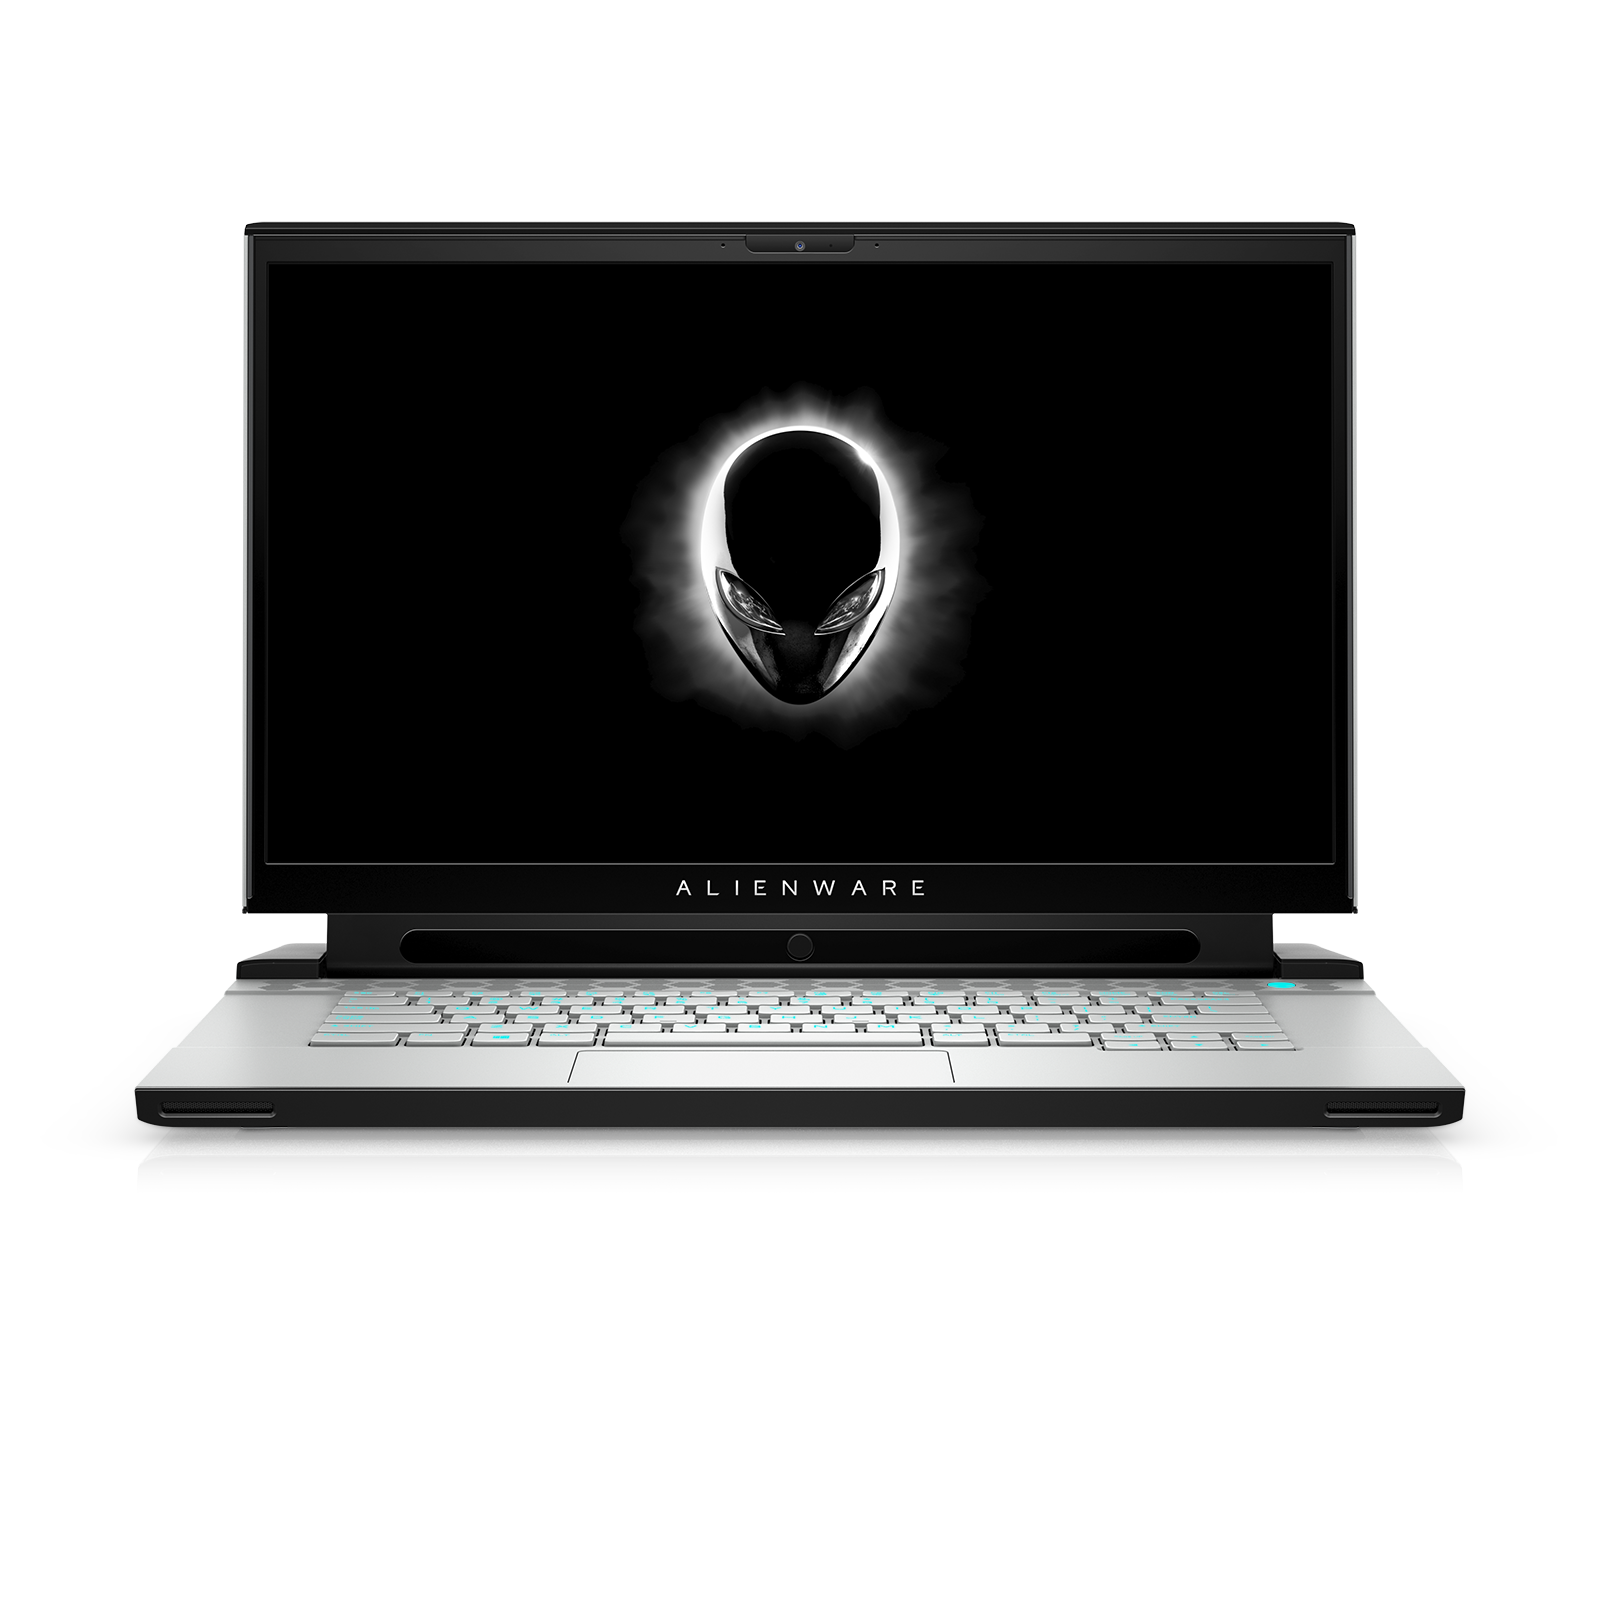 Alienware ordinateur portable PNG image